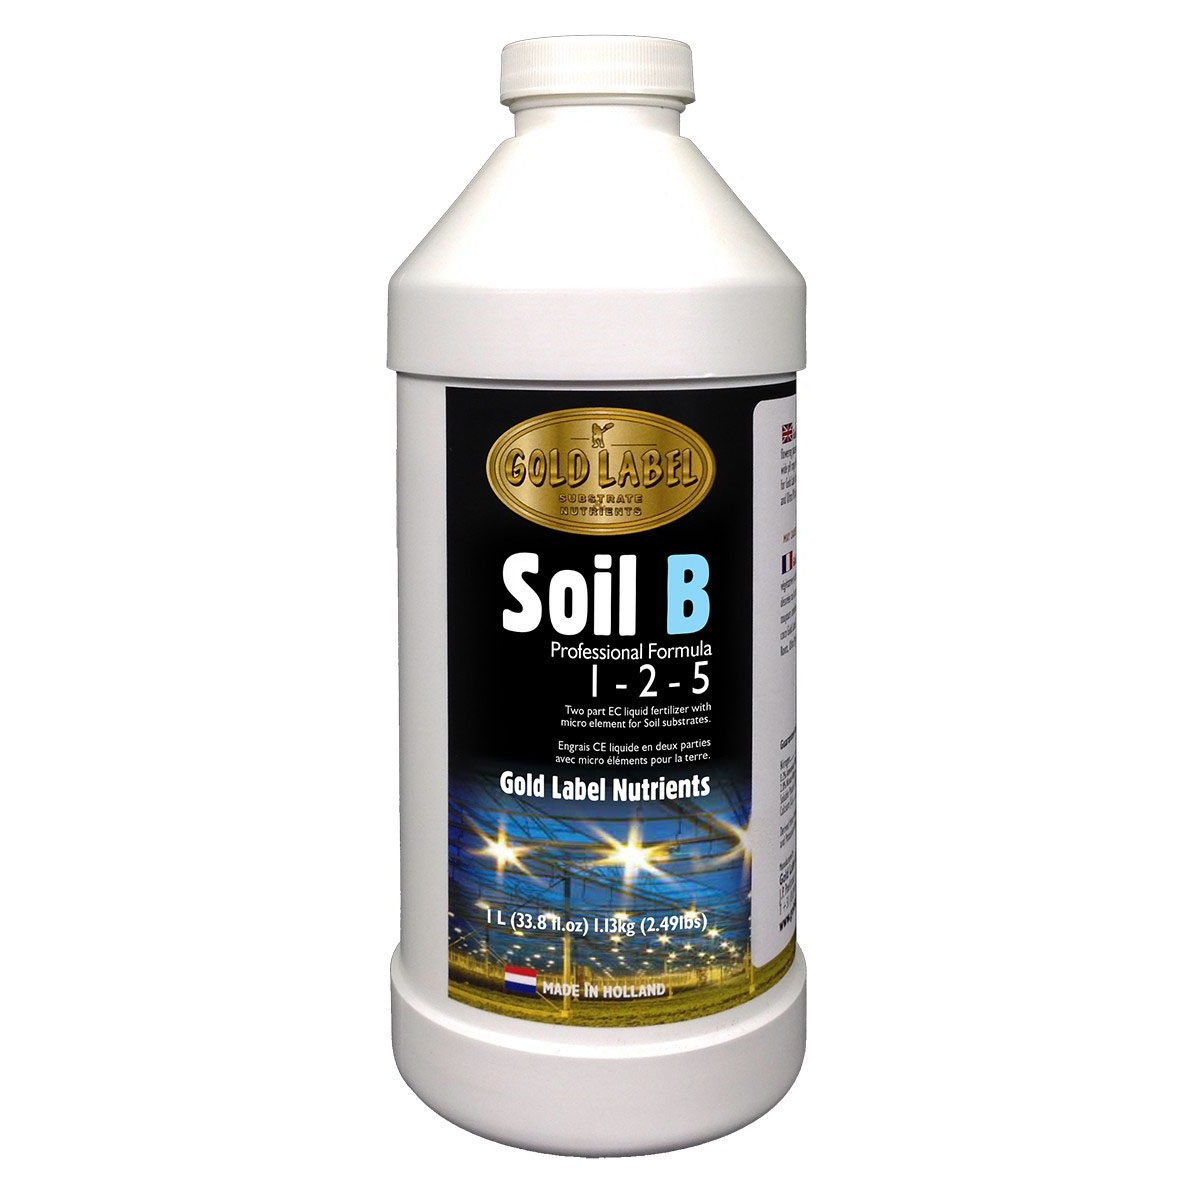 Soil B by Gold Label